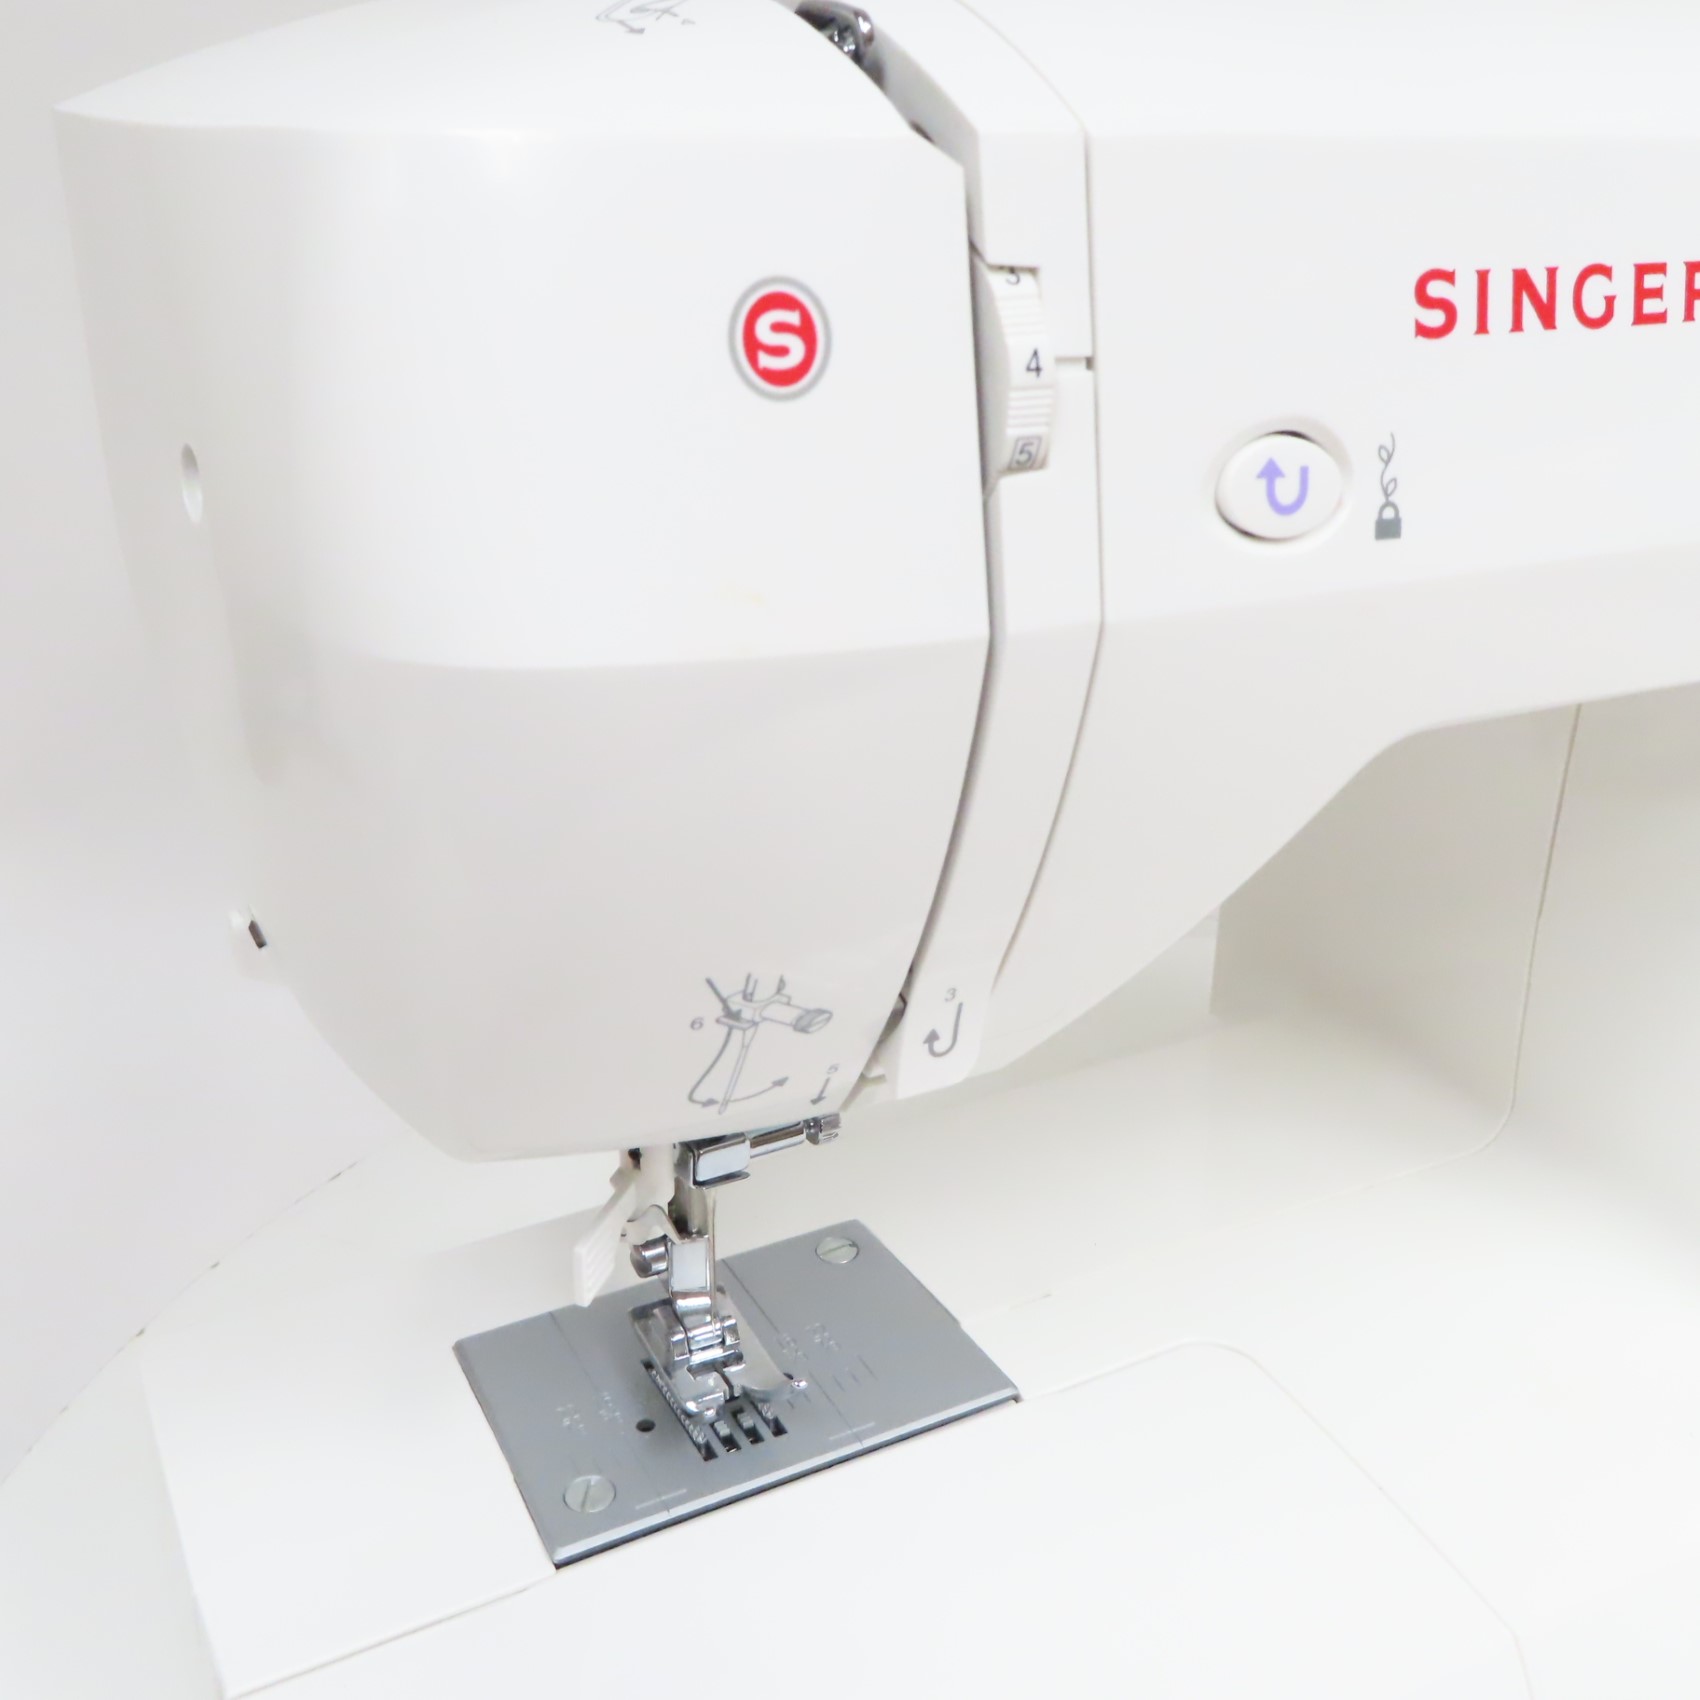 Singer 5560 Fashion Mate Sewing Machine